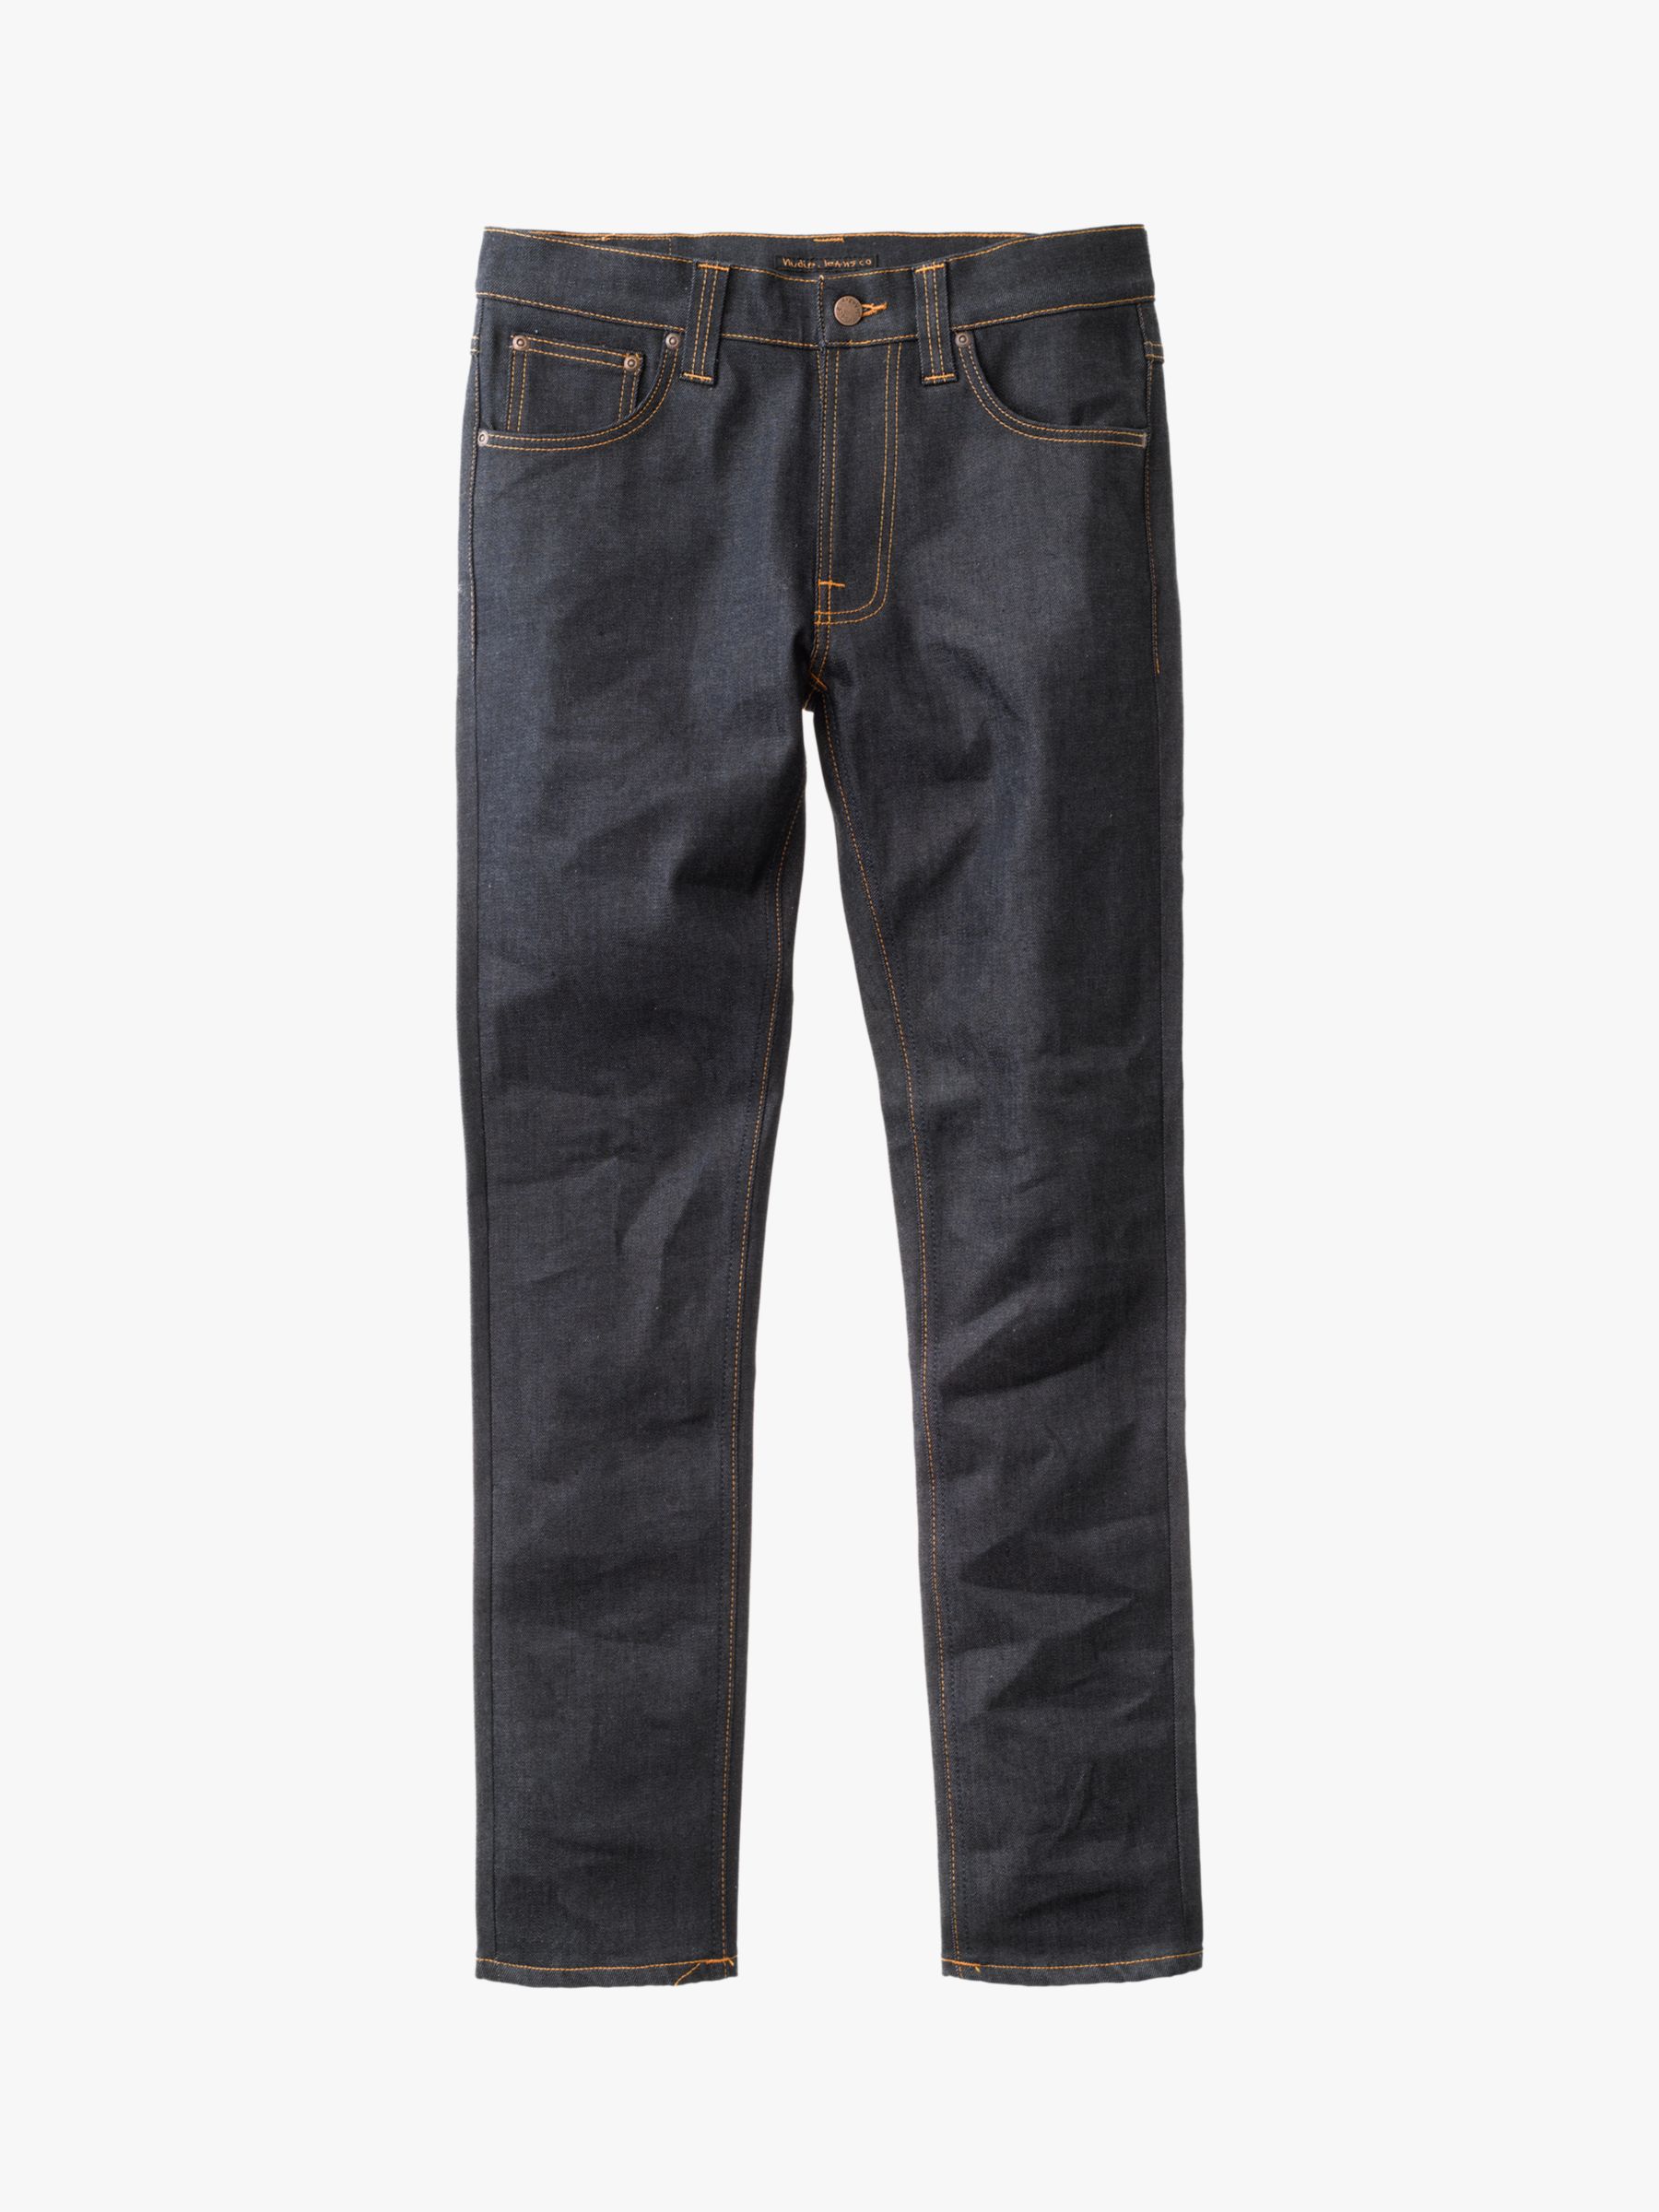 Nudie Jeans Slim Lean Dean Jeans, Dry 16 Dips, 30S